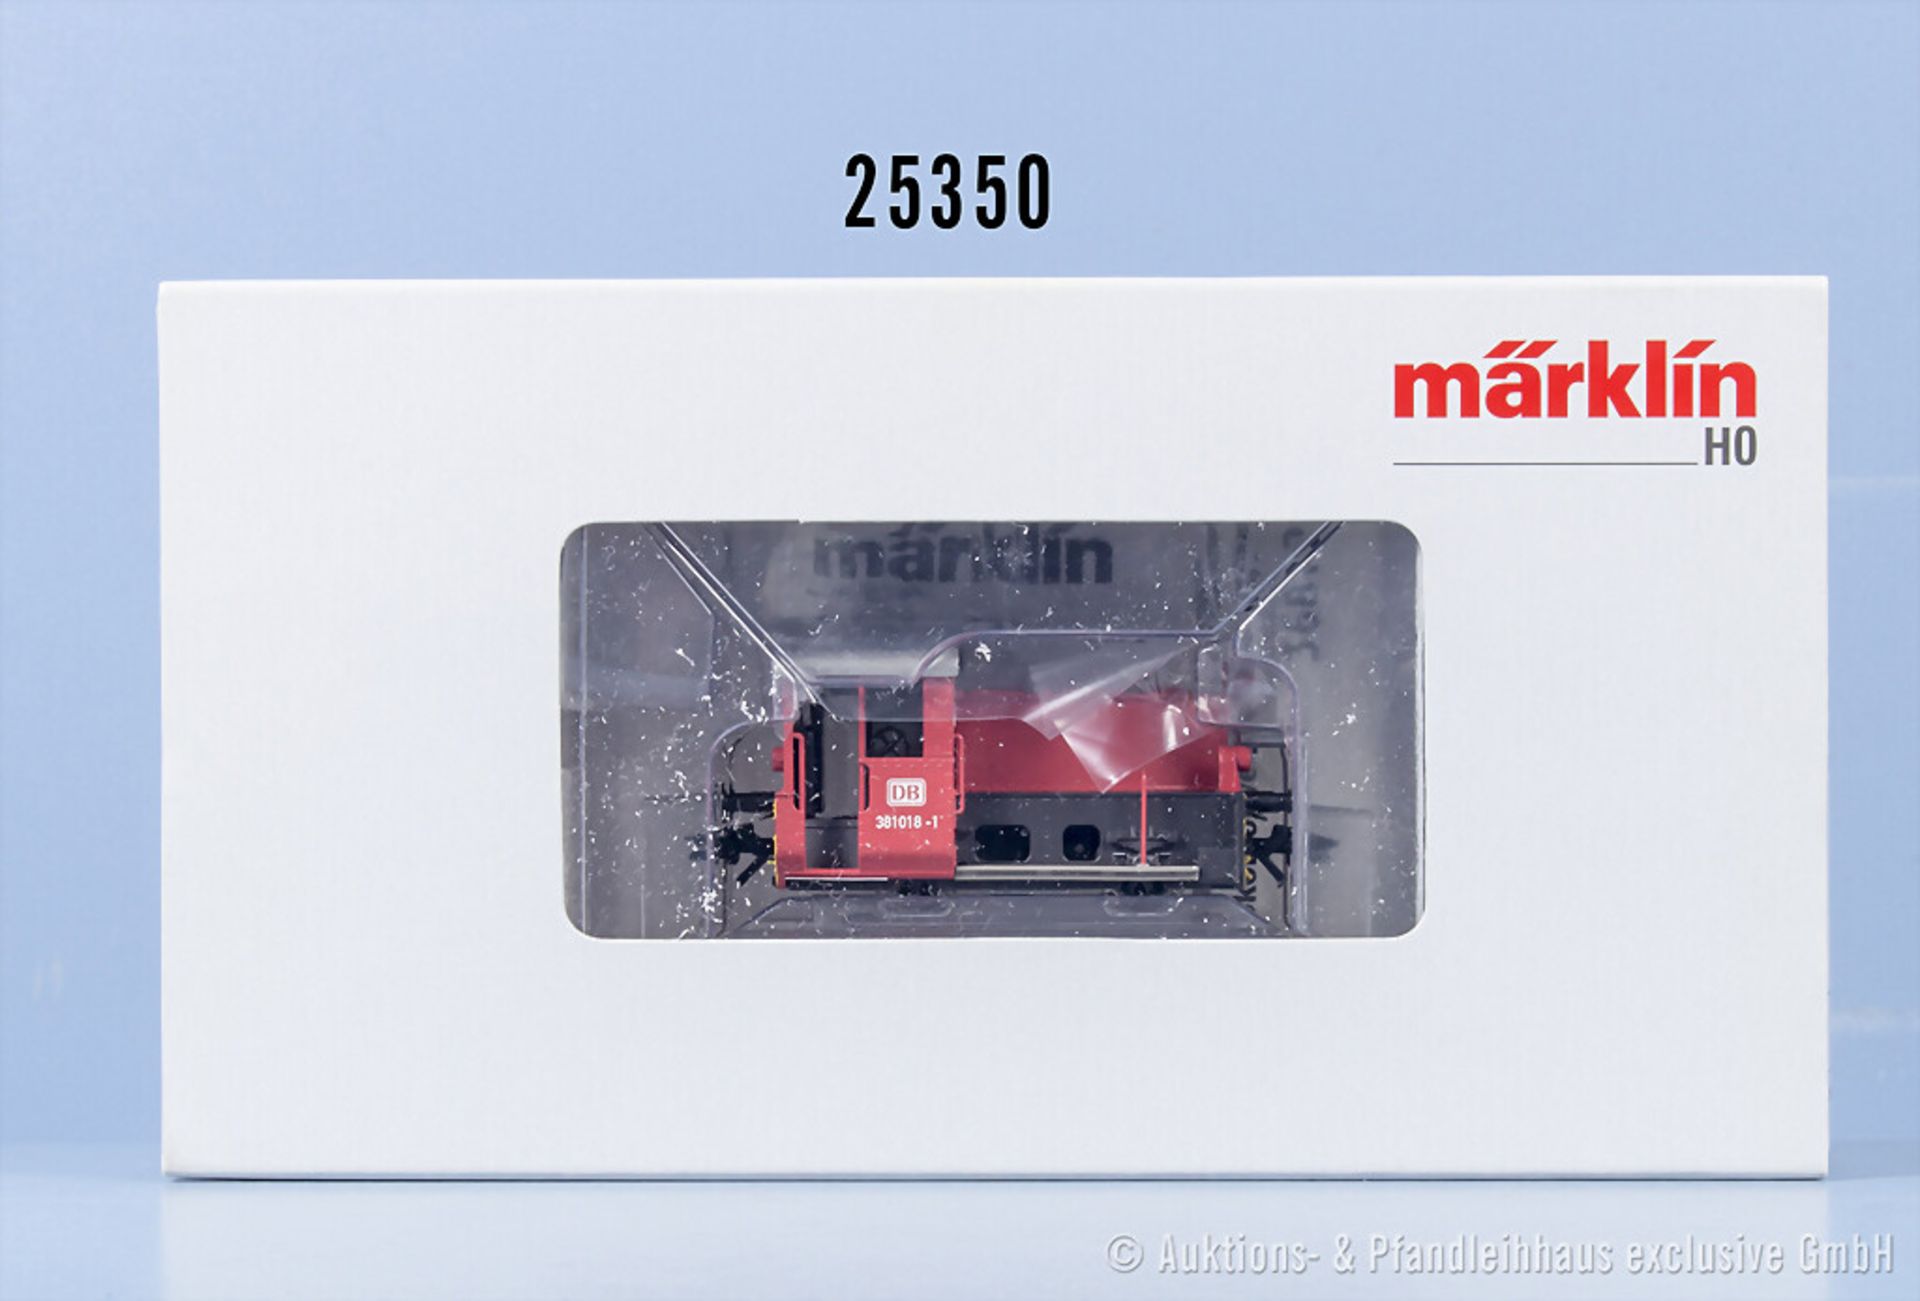 Märklin mfx digital H0 36812 Akkulok der DB, BN 381 018-1, Z 1, in ...